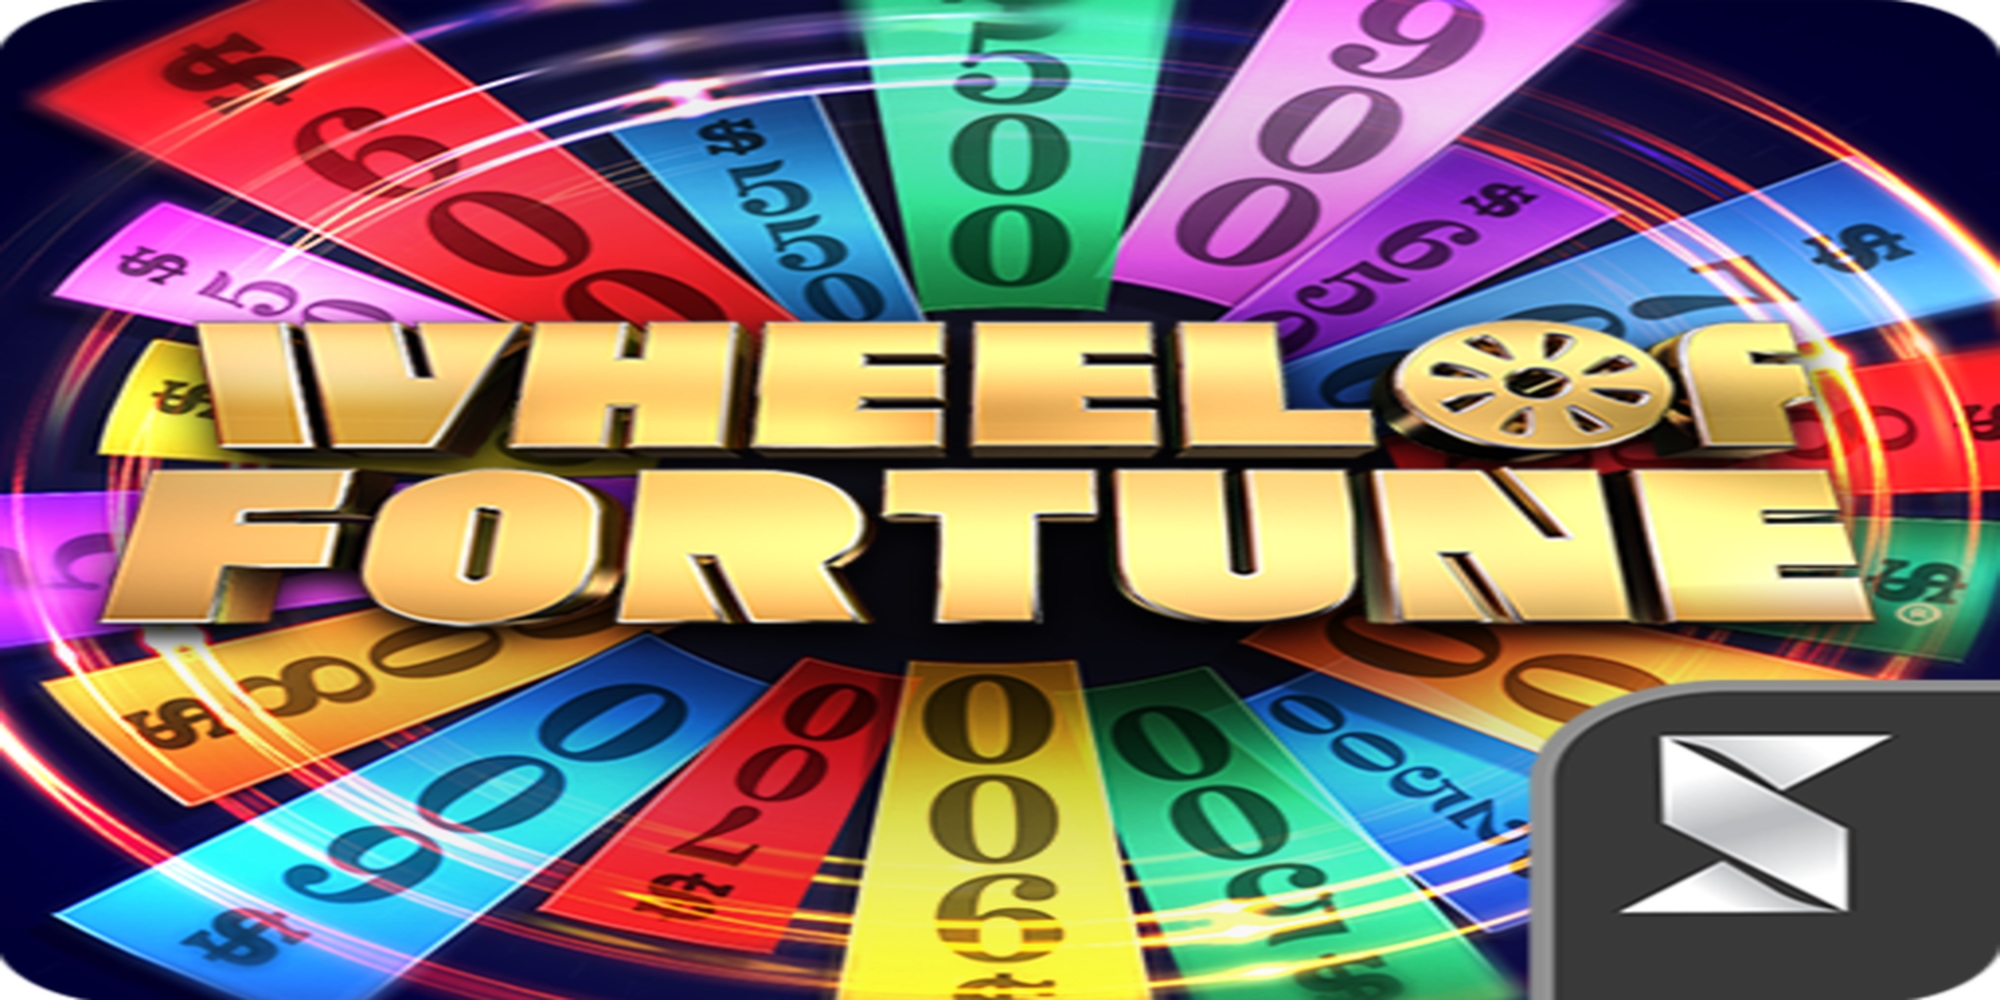 Wheel of Fortune Hawaiian Getaway Powerbucks demo